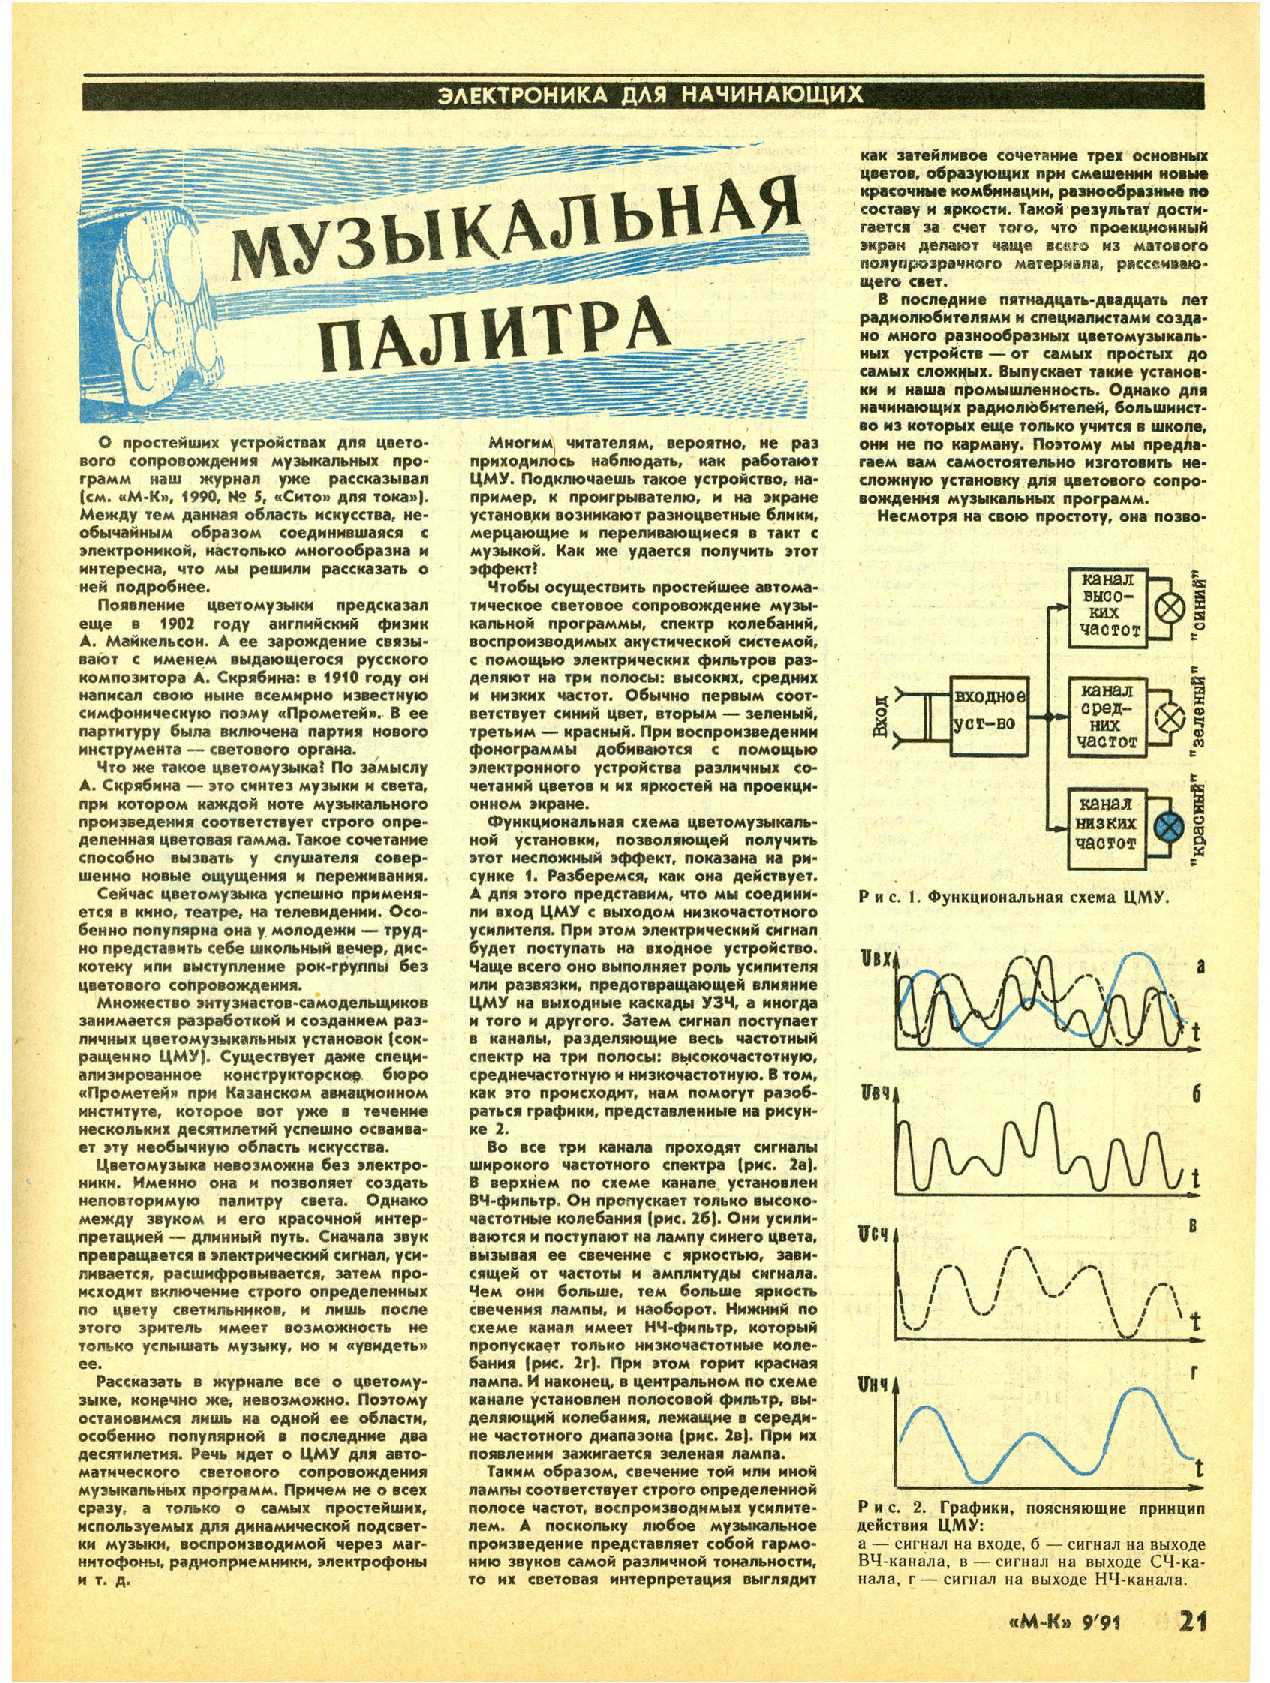 МК 9, 1991, 21 c.